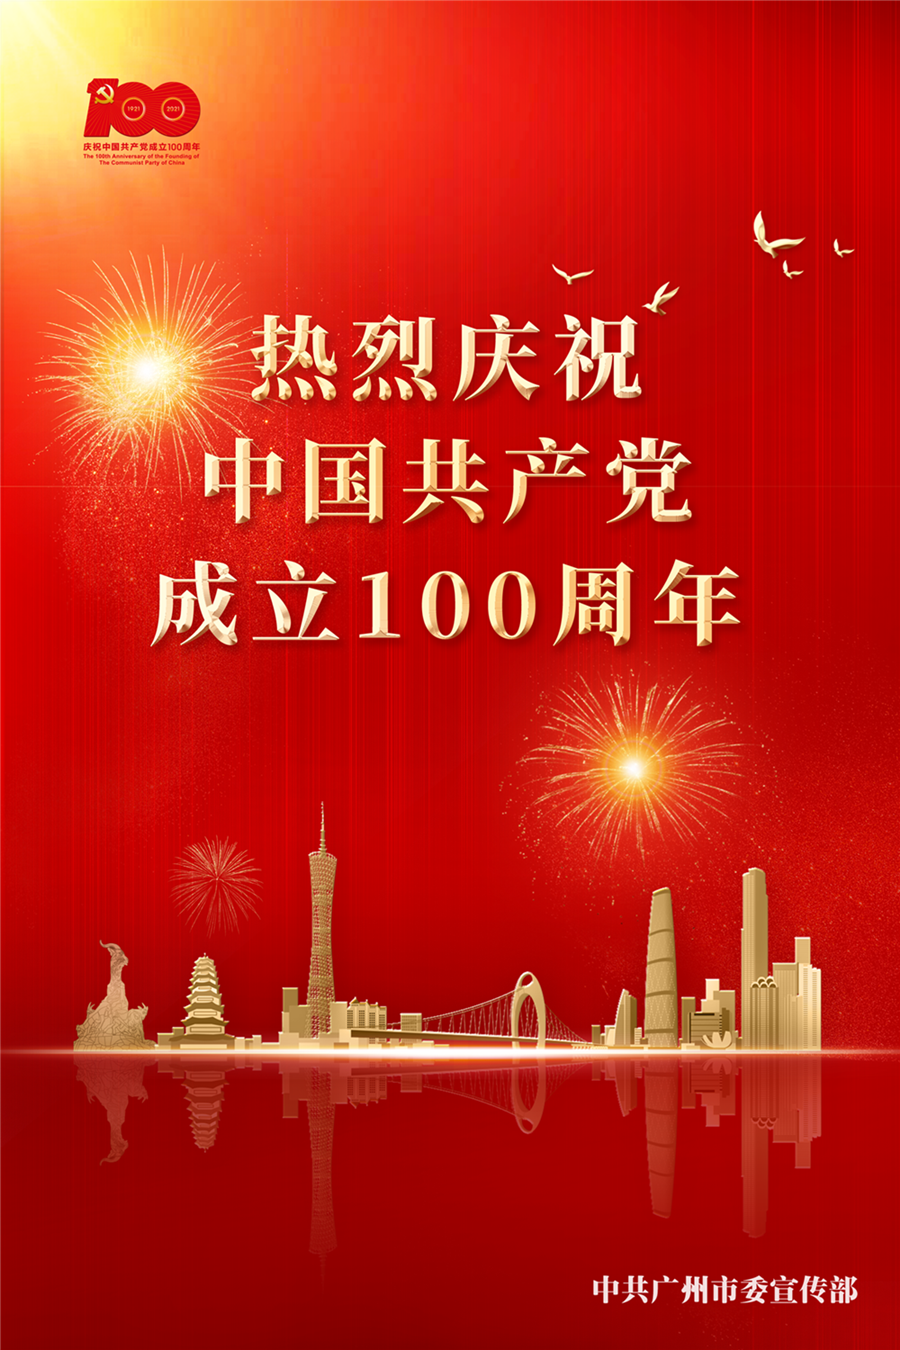 庆祝中国共产党成立100周年【竖版】.png